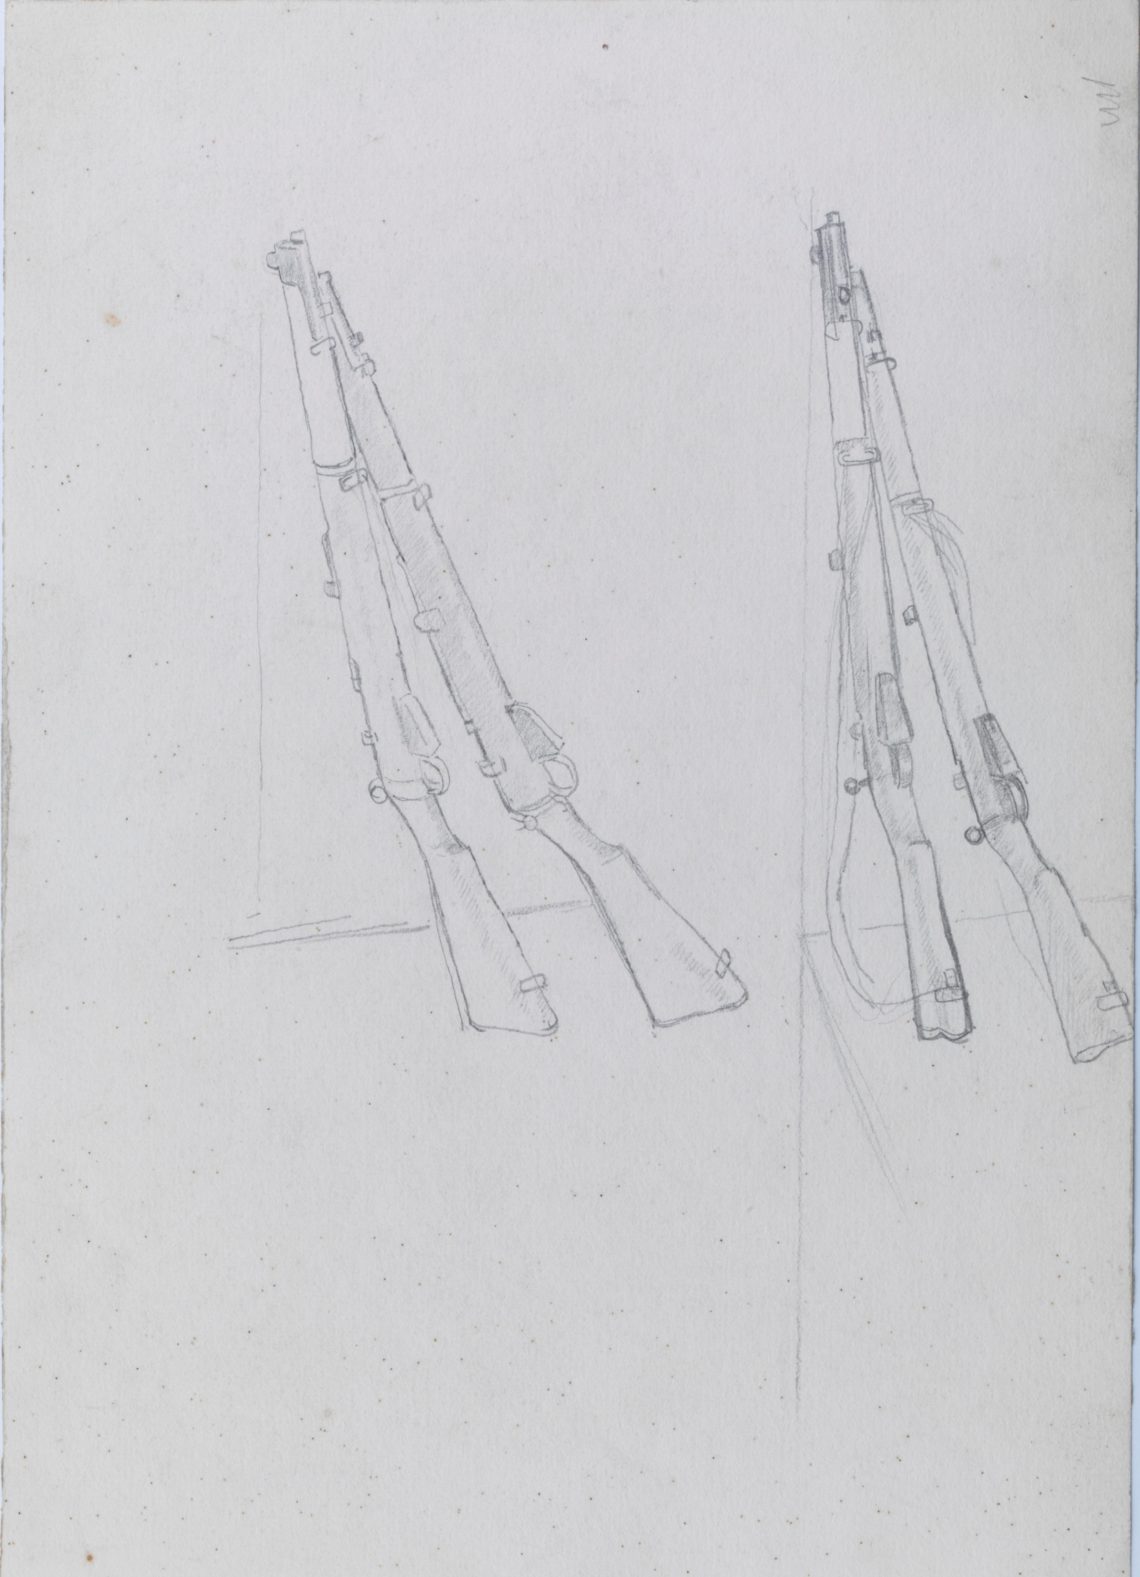 Henry_Lamb_Study-of-guns-V35a, 25.1 x 17.5cm,